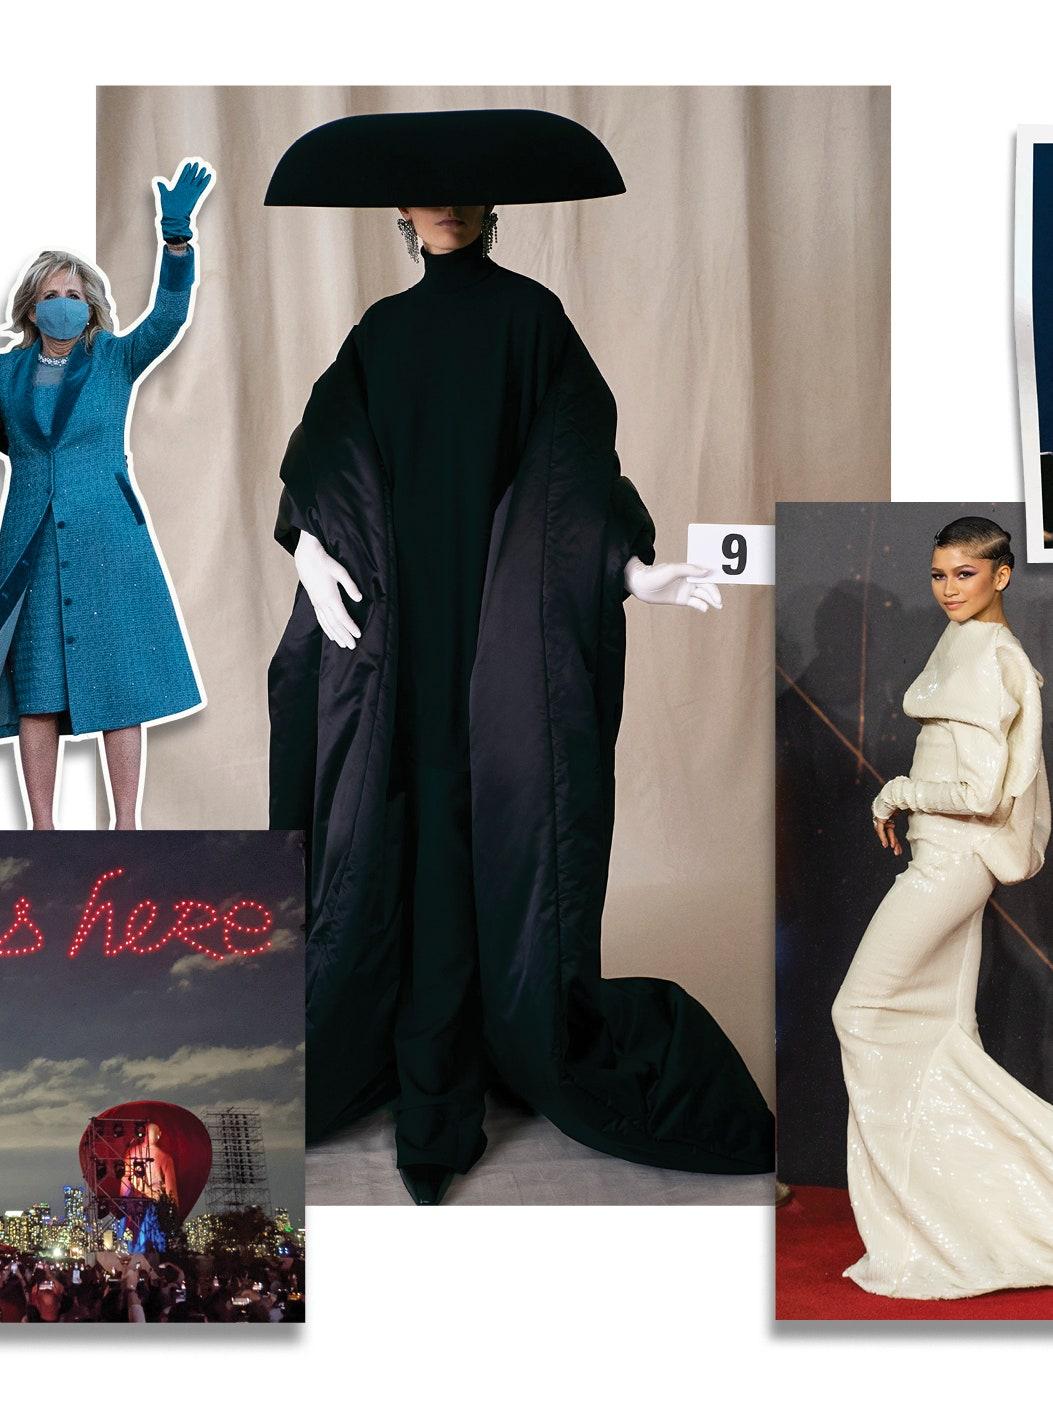 Mode-Rückblick: 12 Outfits, die das Jahr 2021 geprägt haben 